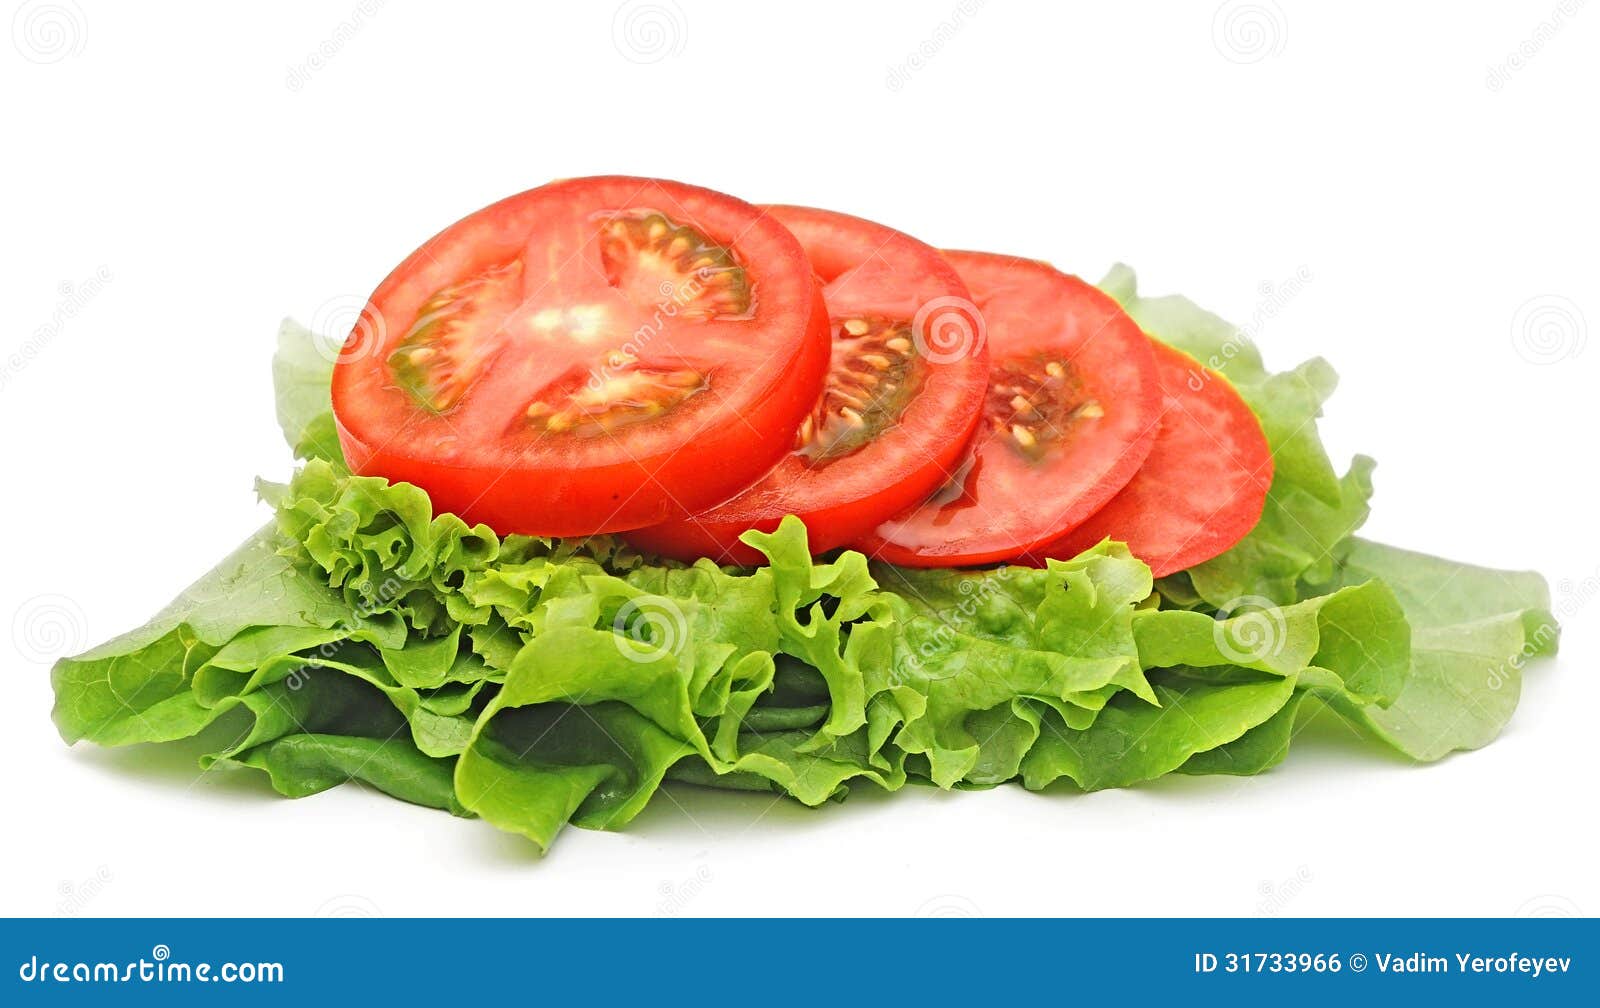 https://thumbs.dreamstime.com/z/tomato-vegetable-lettuce-salad-isolated-white-background-31733966.jpg